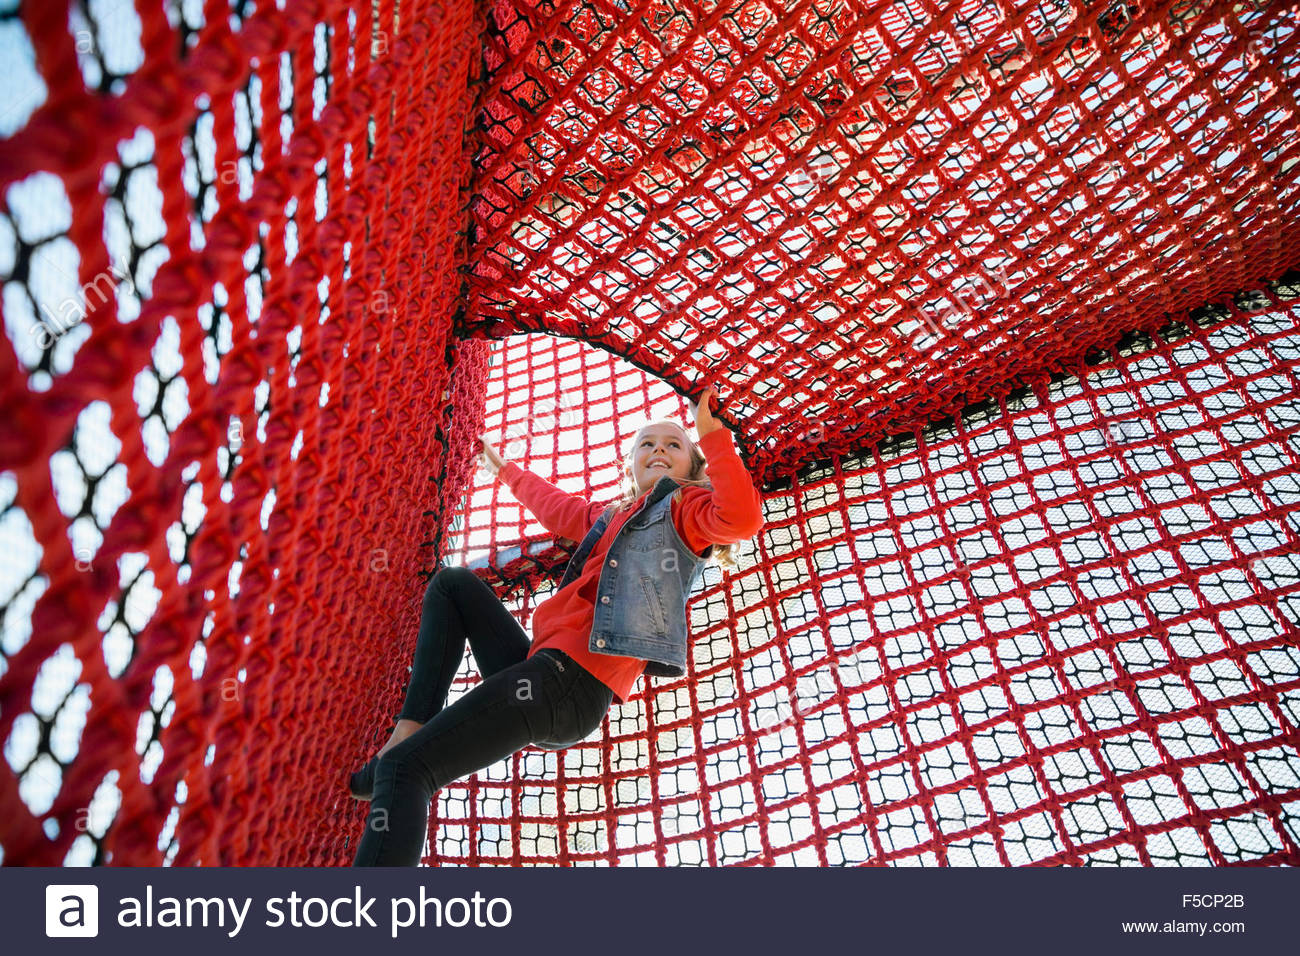 Girl climbing rope net at playground Stock Photo